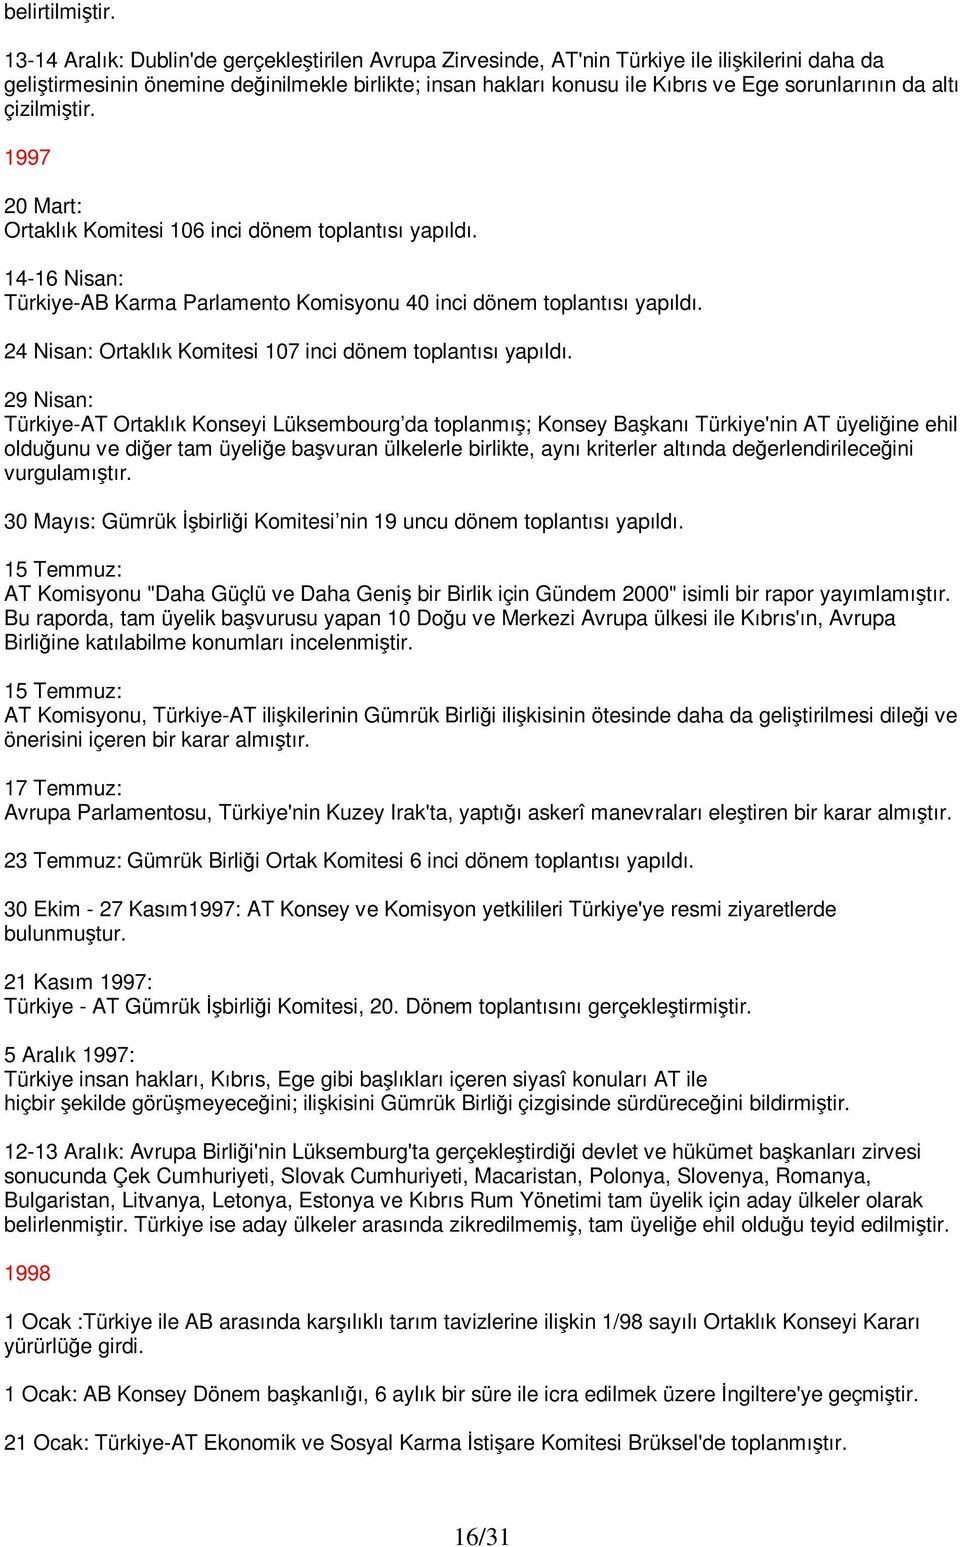 da altı çizilmiştir. 1997 20 Mart: Ortaklık Komitesi 106 inci dönem toplantısı yapıldı. 14-16 Nisan: Türkiye-AB Karma Parlamento Komisyonu 40 inci dönem toplantısı yapıldı.